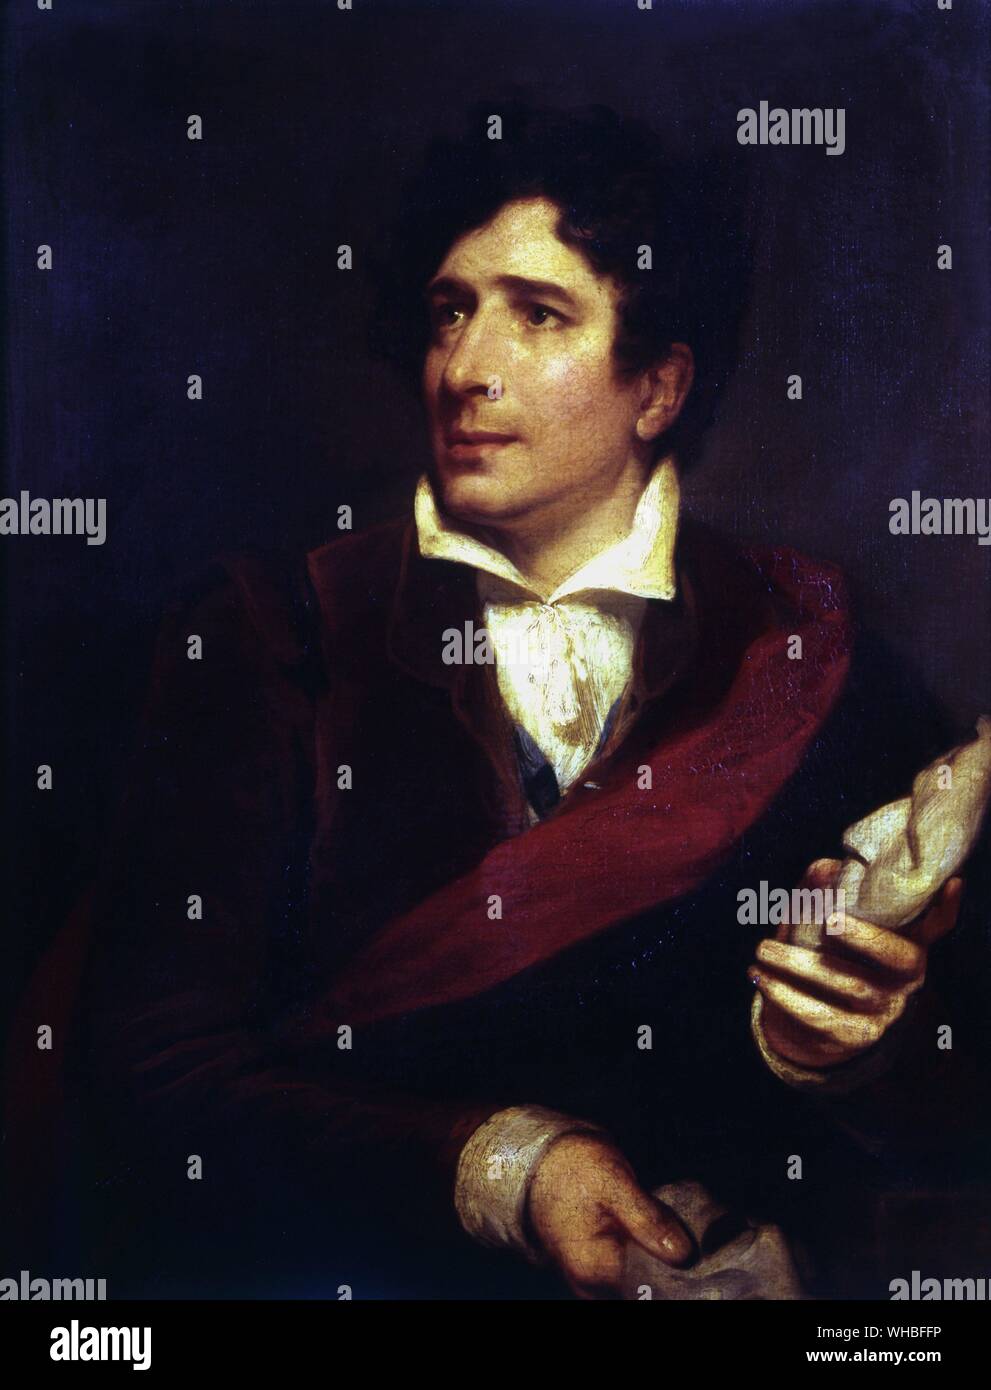 Charles Kemble di H. P. Briggs 1832 - Garrick Club di Londra.. Charles Kemble (25 novembre 1775 - 12 novembre 1854) era un attore britannico, il figlio più giovane di Roger Kemble.. Foto Stock